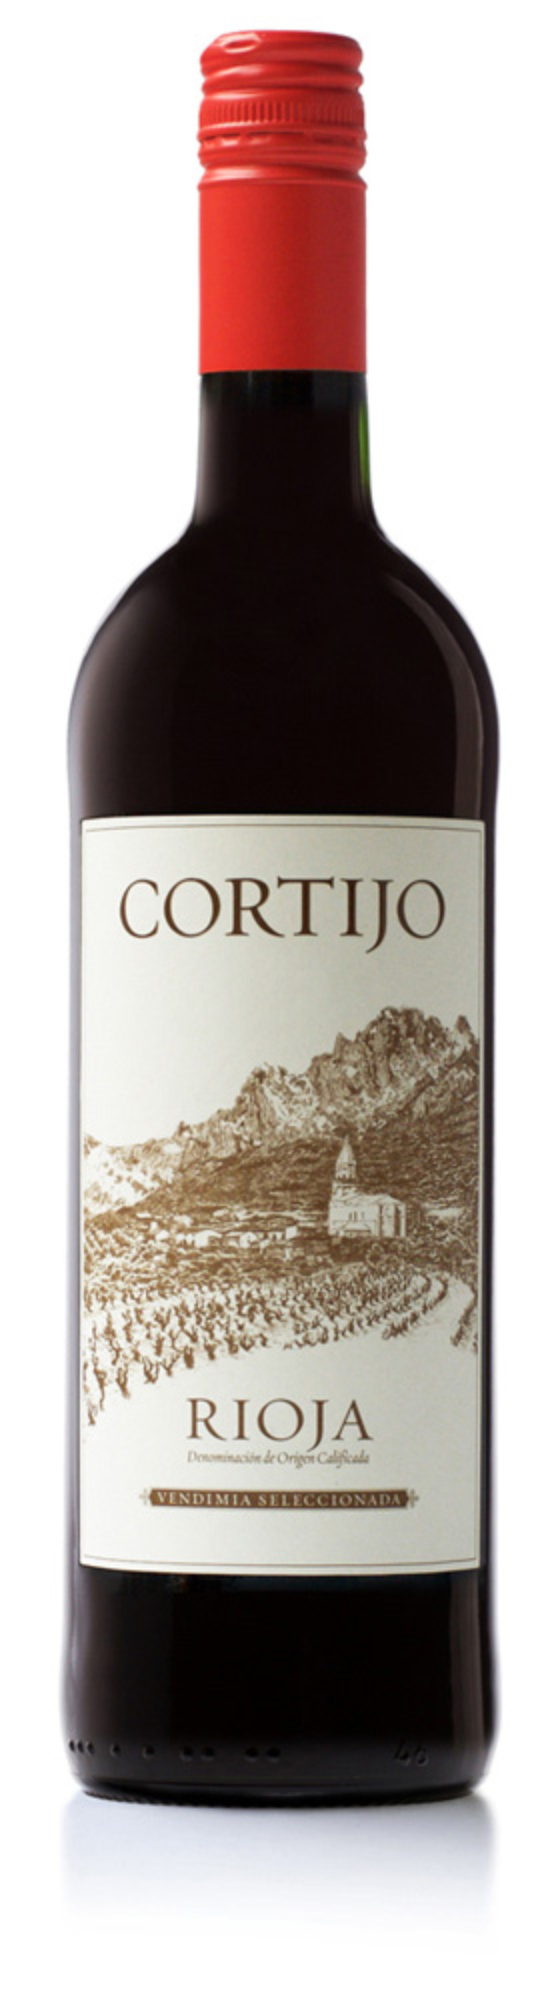 Cortijo Rioja Tinto 2019